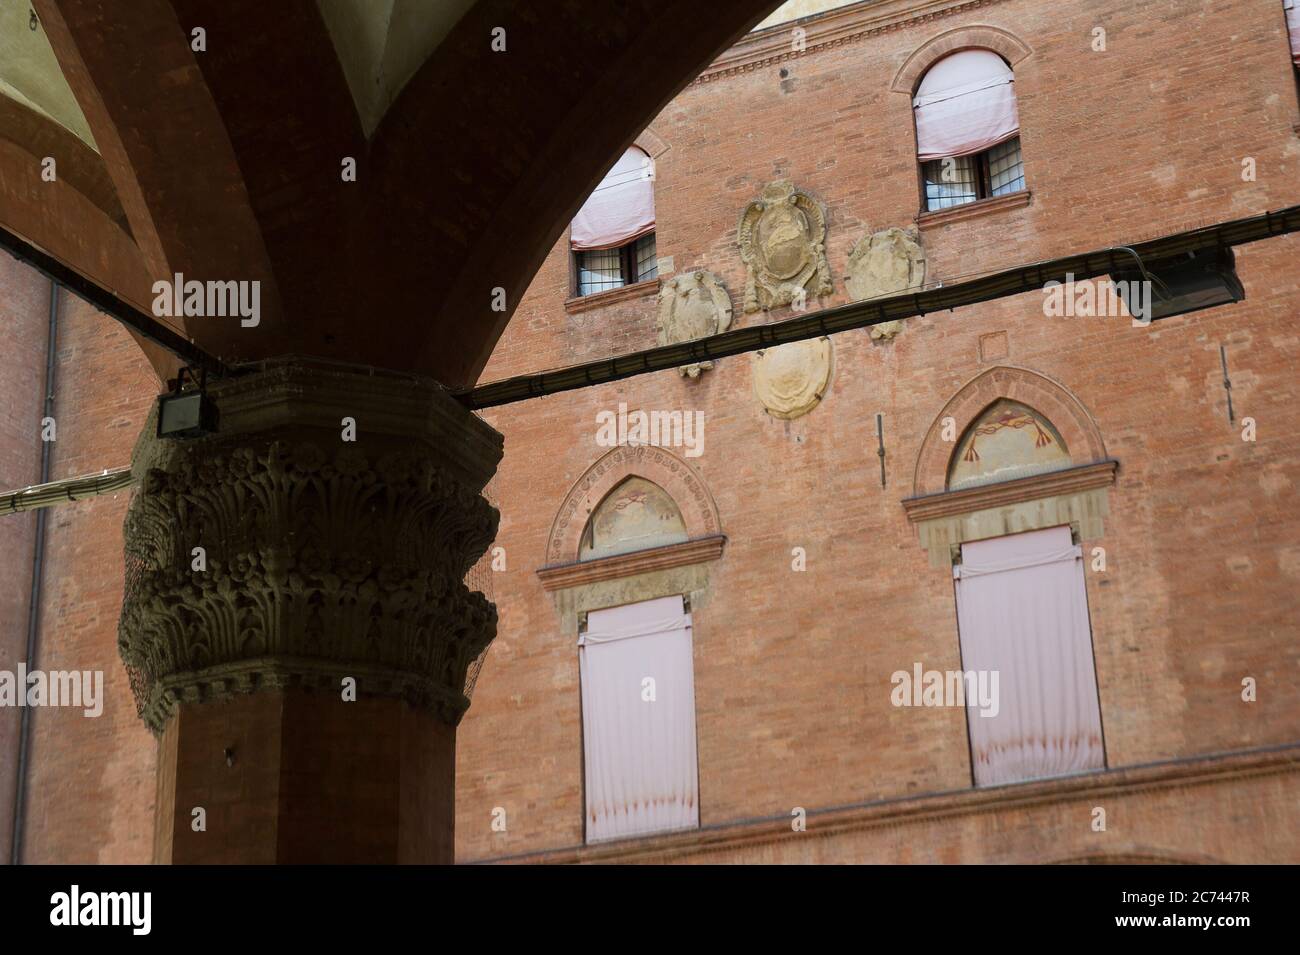 Europe, Italie, Émilie-Romagne, Bologne. Le Palazzo d'Accursio est l'hôtel de ville de Bologne, construit en 1290, surplombant la place Piazza Maggiore, aujourd'hui le siège de la municipalité de Bologne, en Italie. Banque D'Images